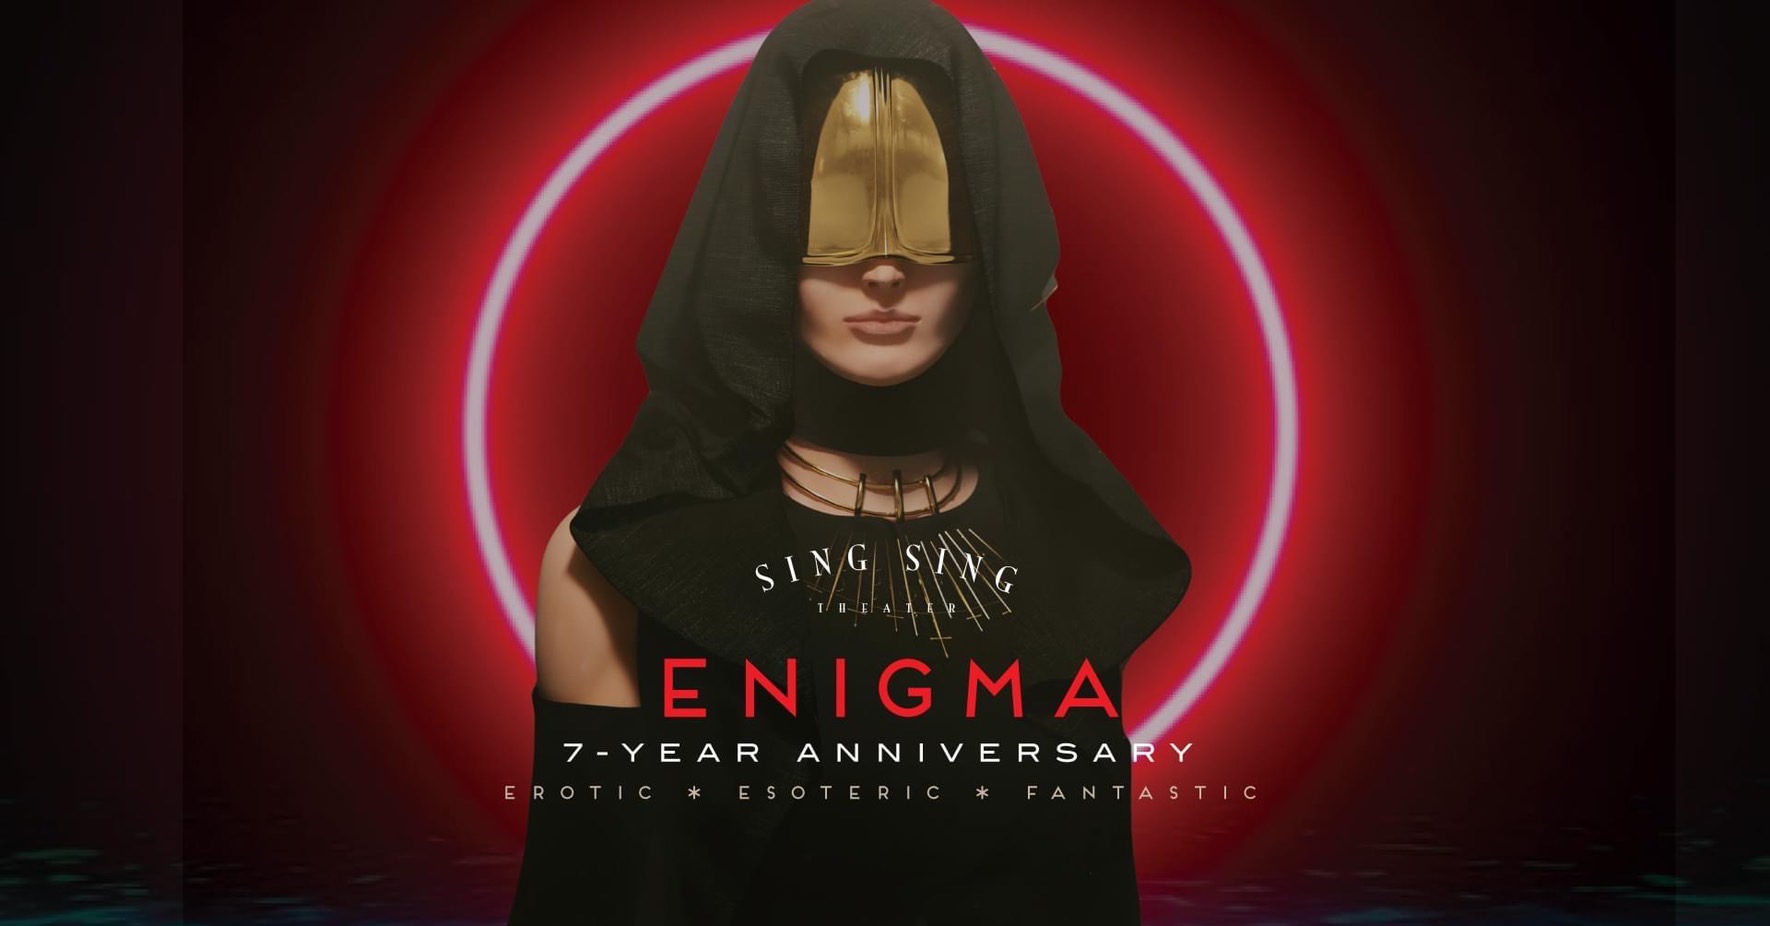 Enigma Erotic